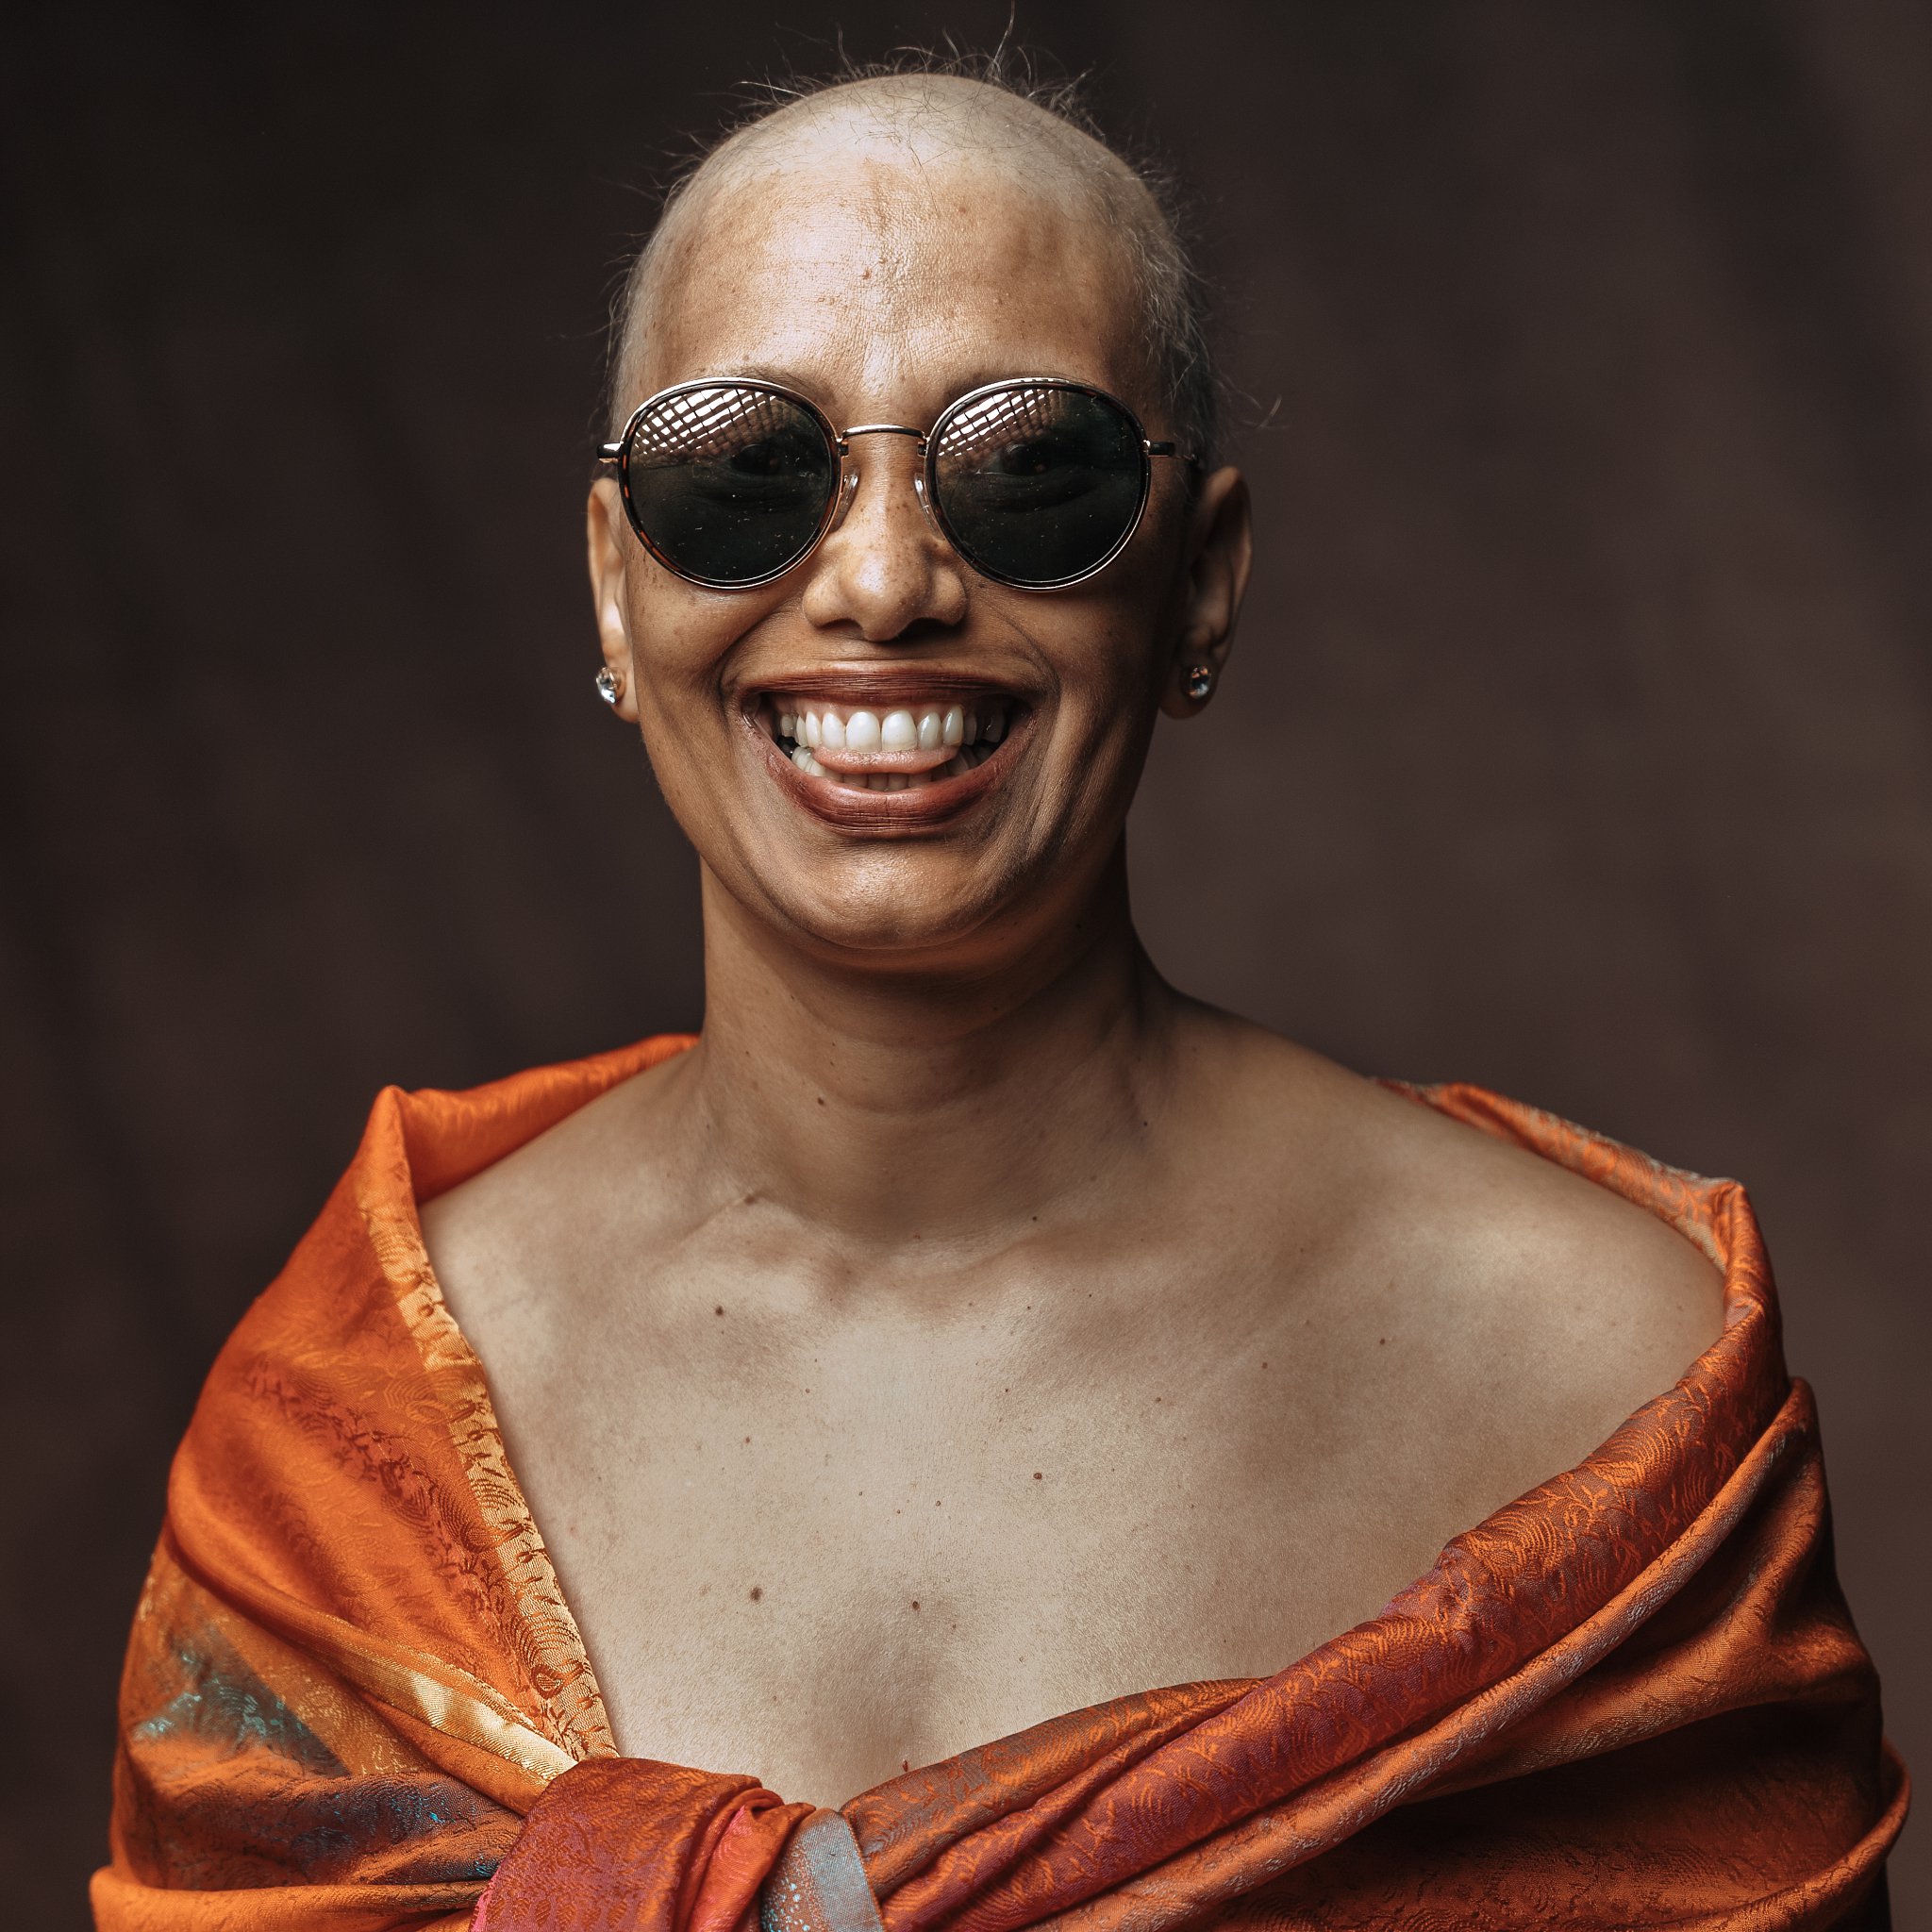 un portrait d'une femme, elle sourit et à des lunettes de soleil, une femme qpose en s'amusant, seance photo pour lutter contre le cancer du sein